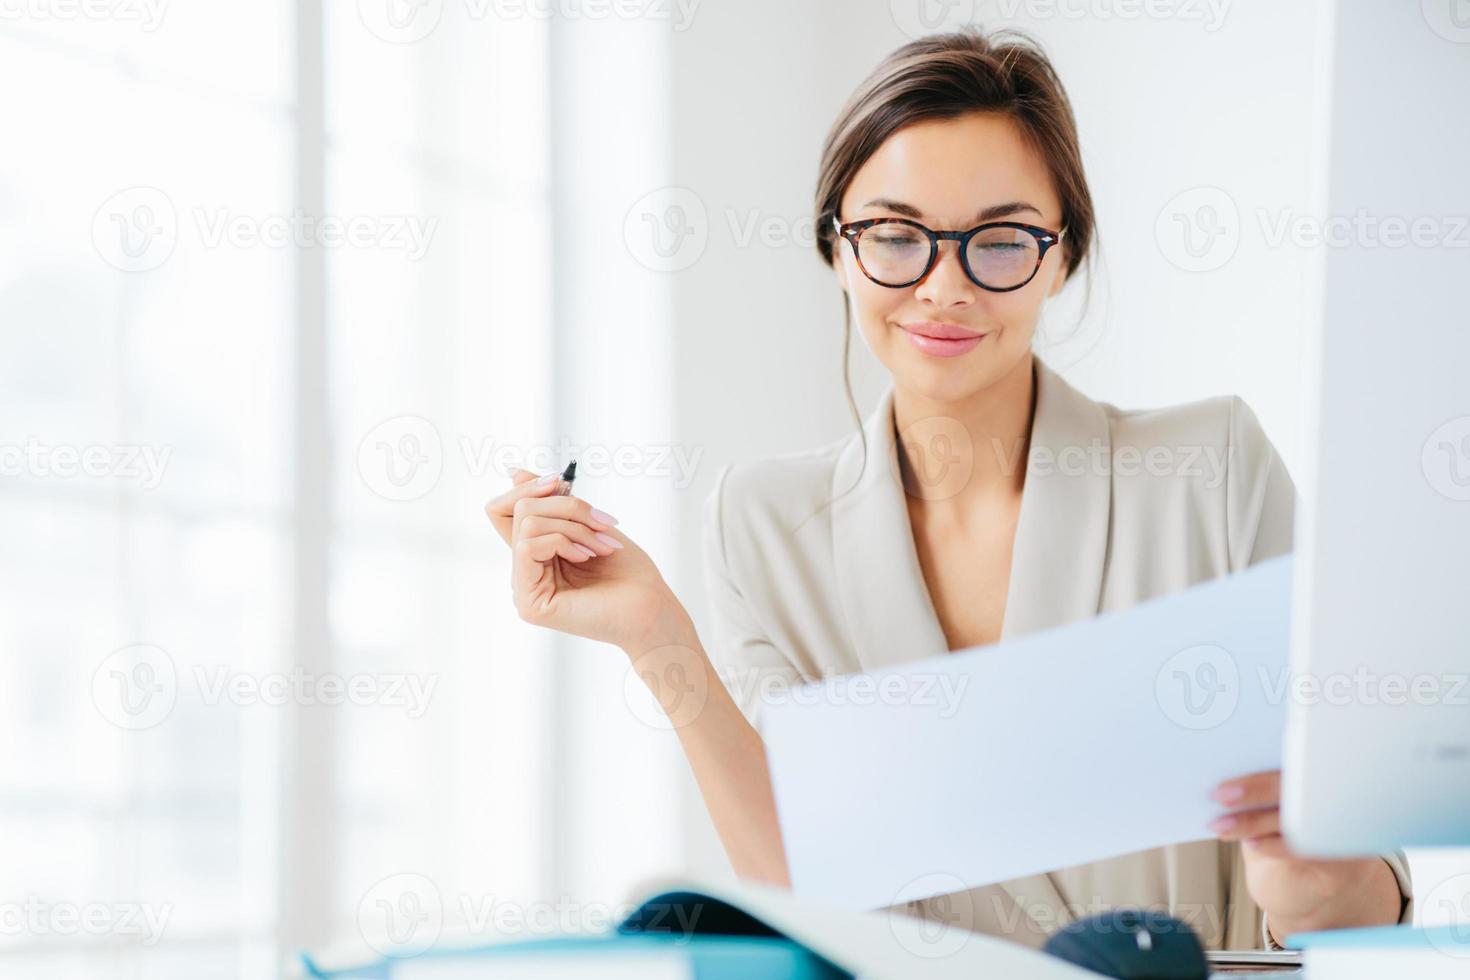 une femme d'affaires concentrée et prospère regarde attentivement le papier, étudie les termes du contrat, tient un stylo, écrit dans des documentations, s'habille formellement, pose au bureau contre un intérieur spacieux blanc photo